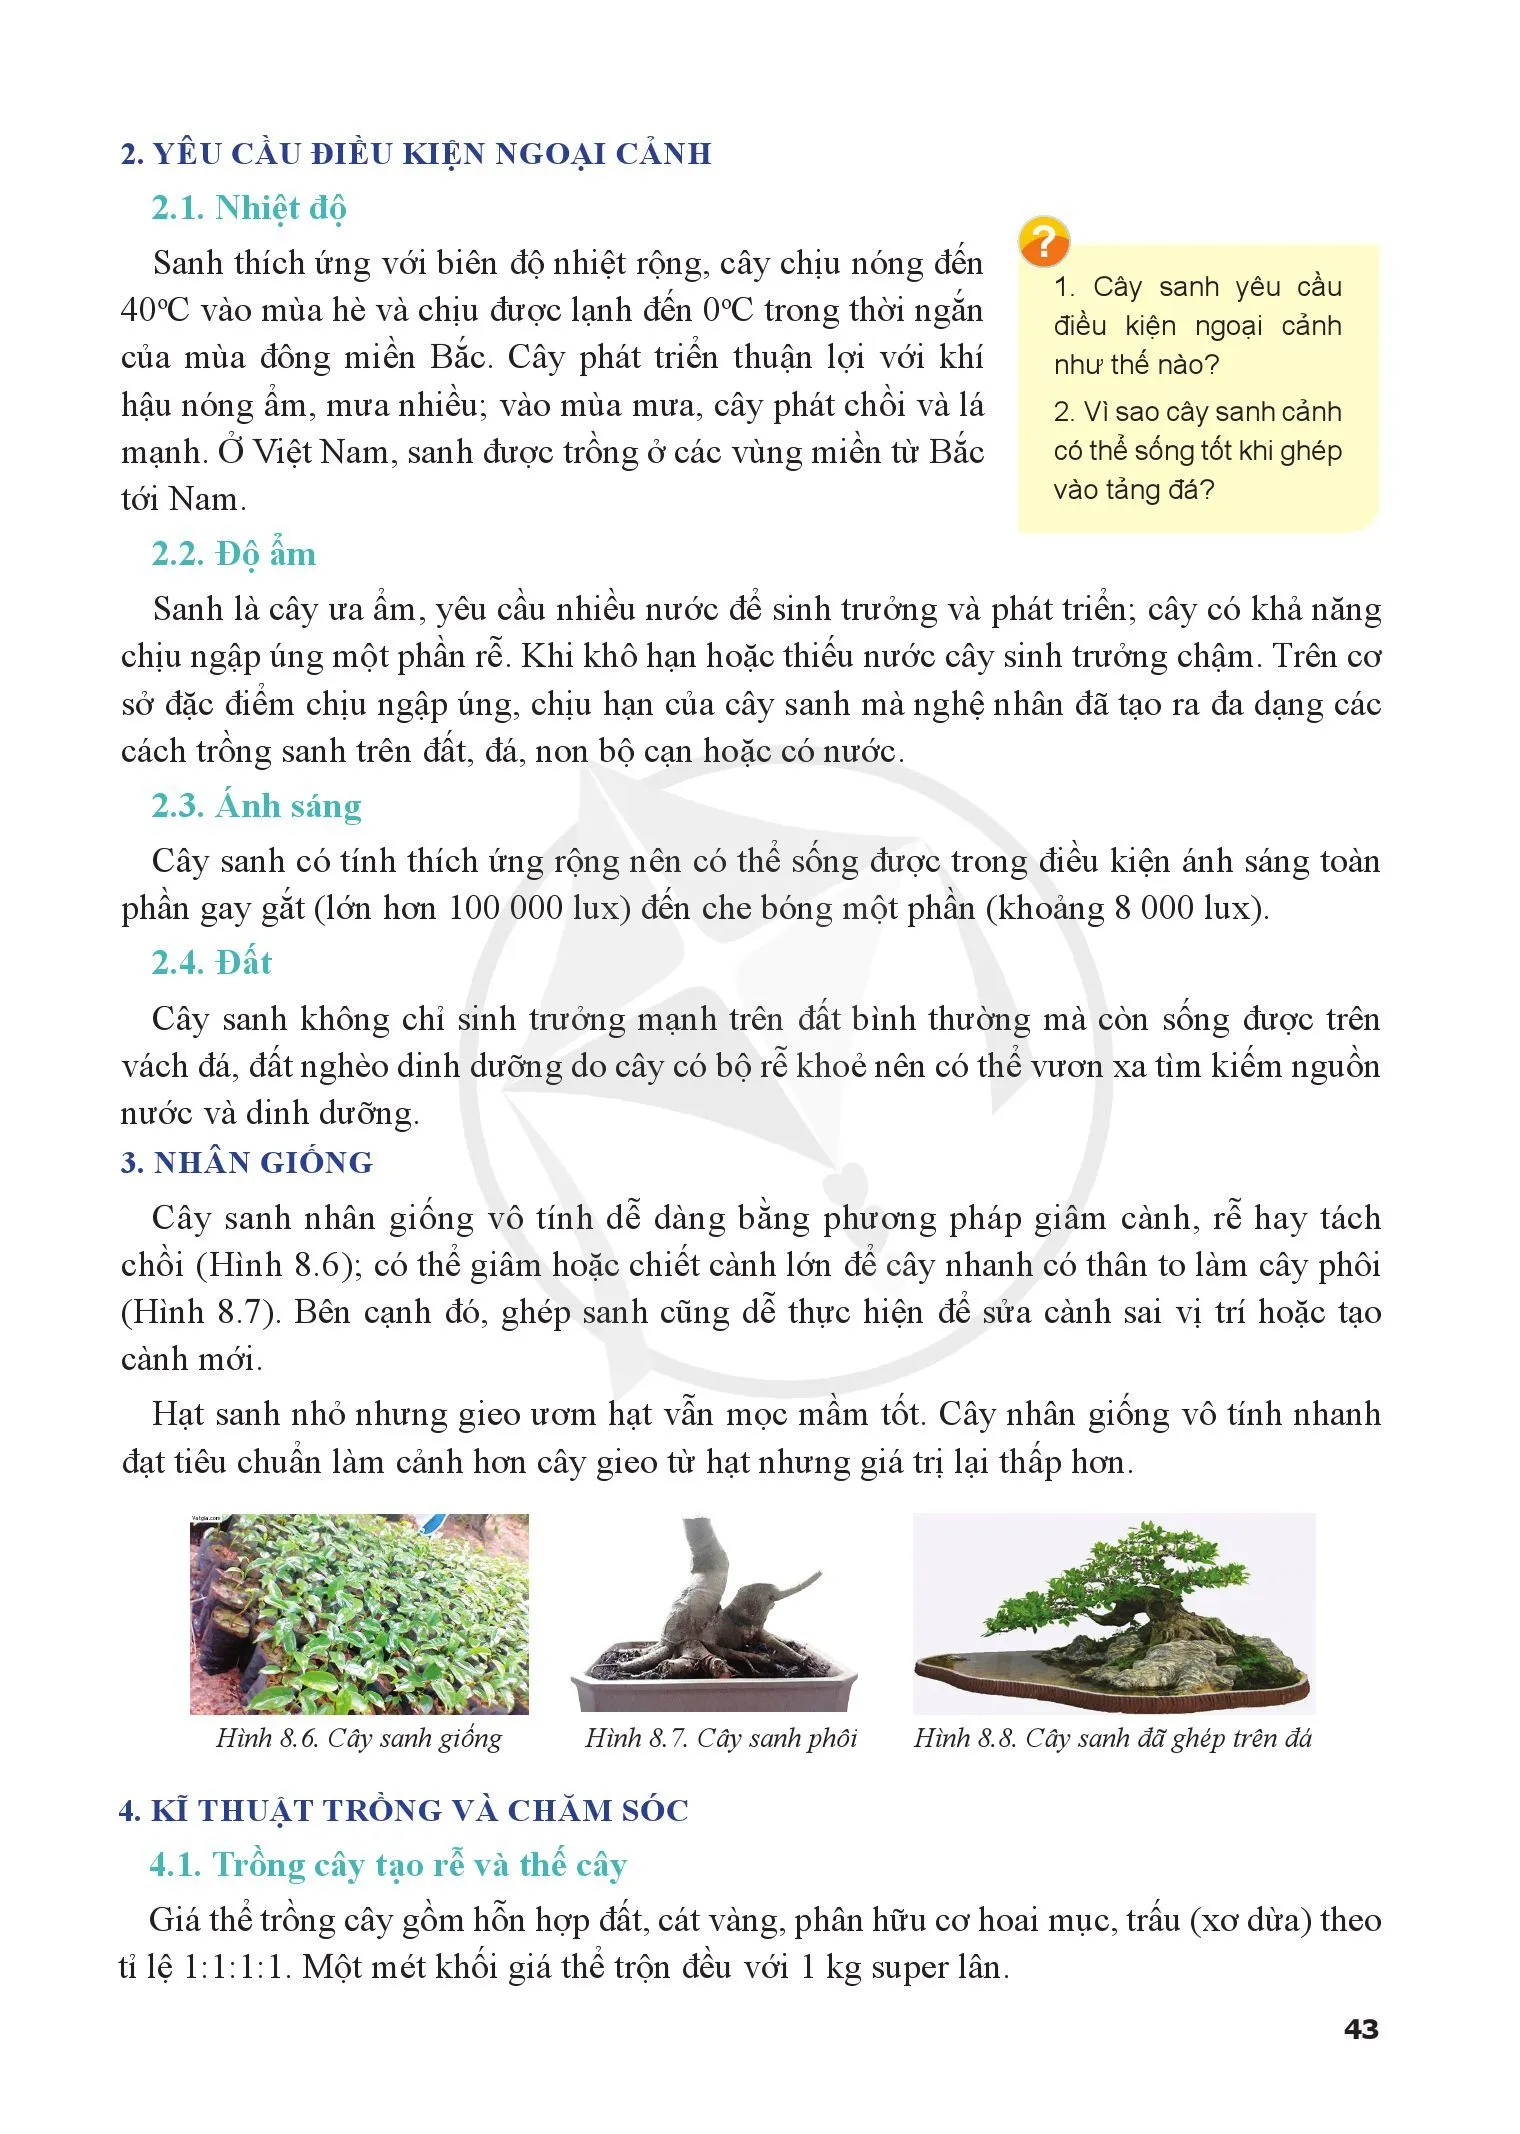 Bài 8. Kĩ thuật trồng, chăm sóc và tạo hình cây sanh